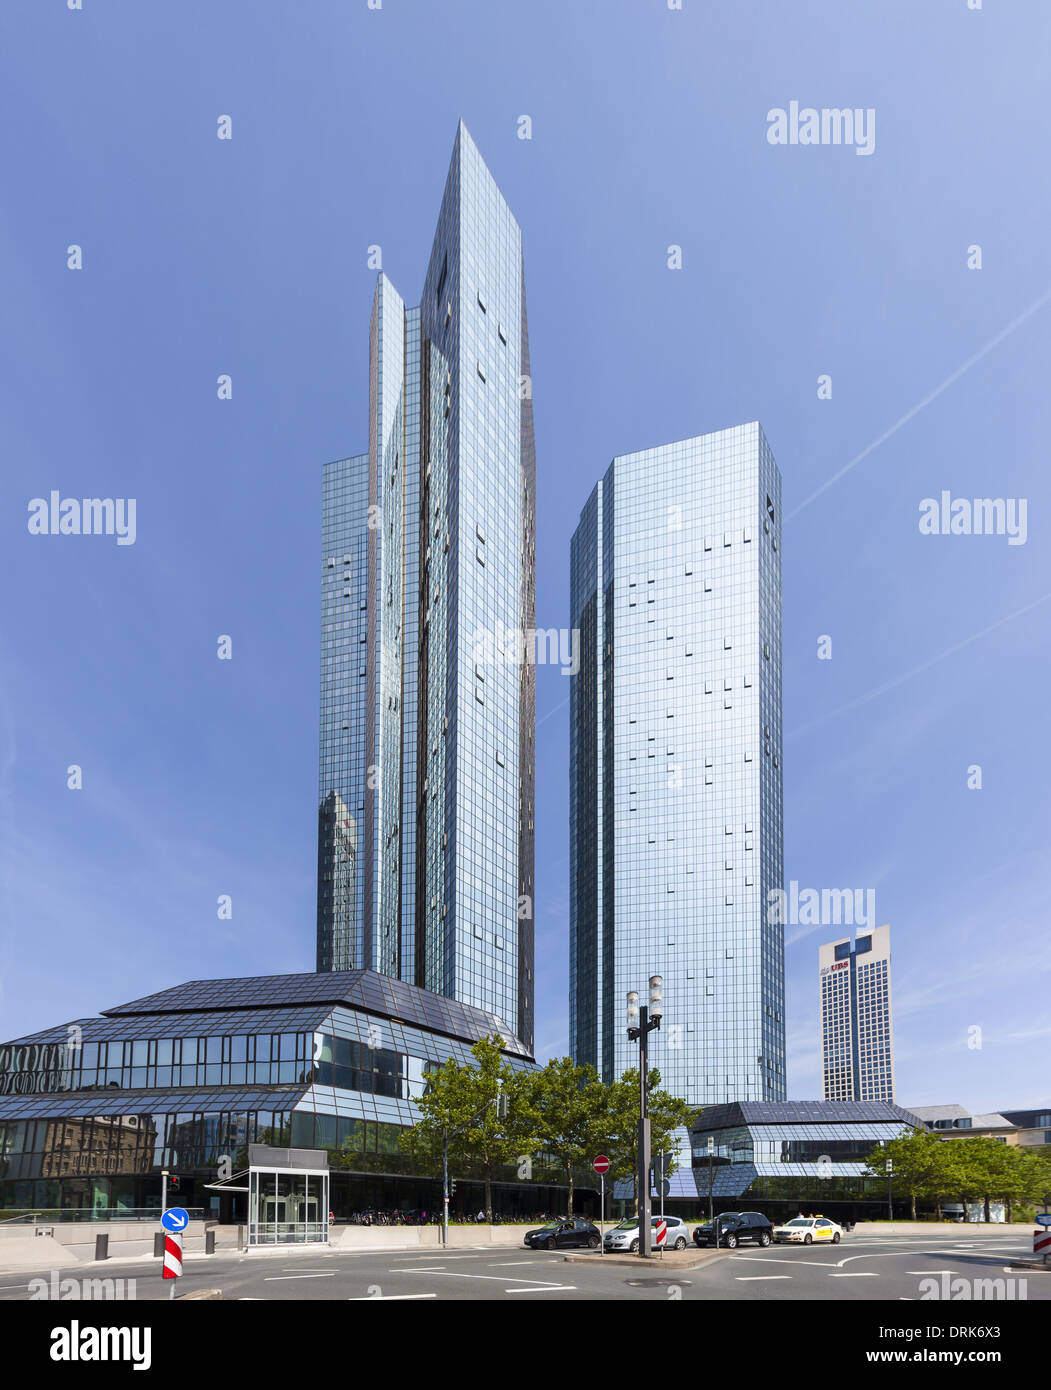 Alemania, Hesse, Frankfurt, torres gemelas de Deutsche Bank. Foto de stock